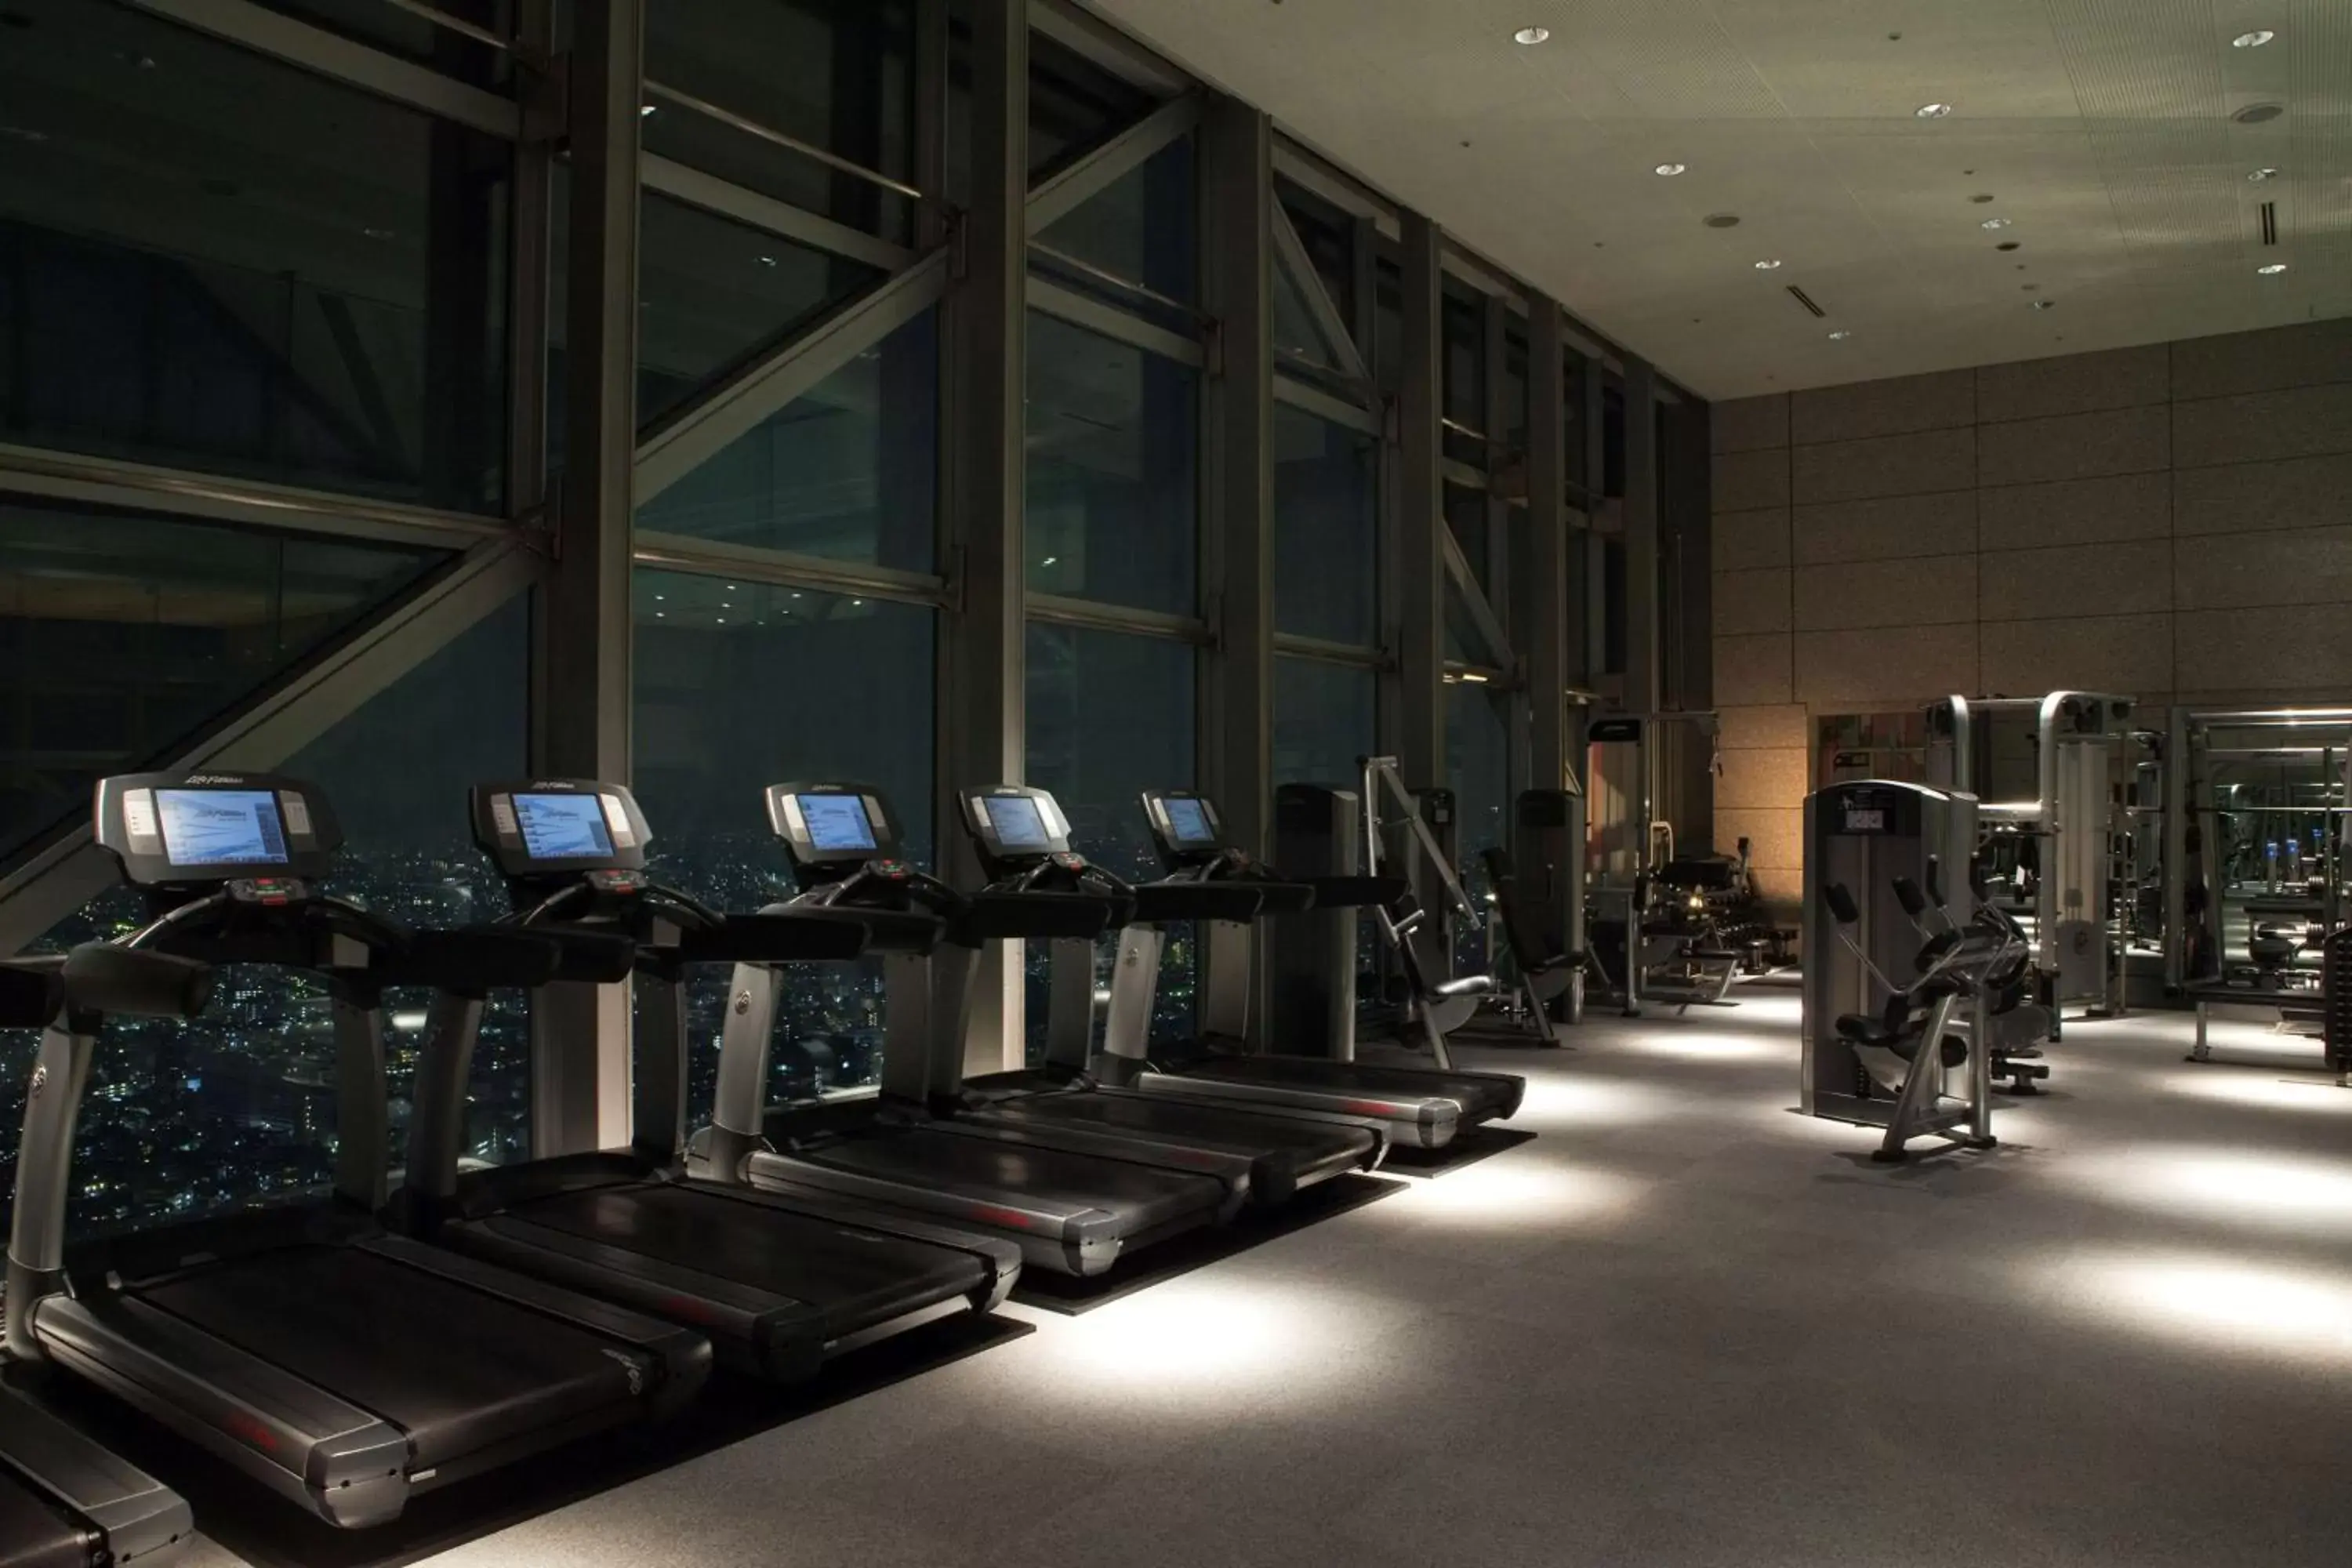 Fitness centre/facilities, Fitness Center/Facilities in Park Hyatt Tokyo